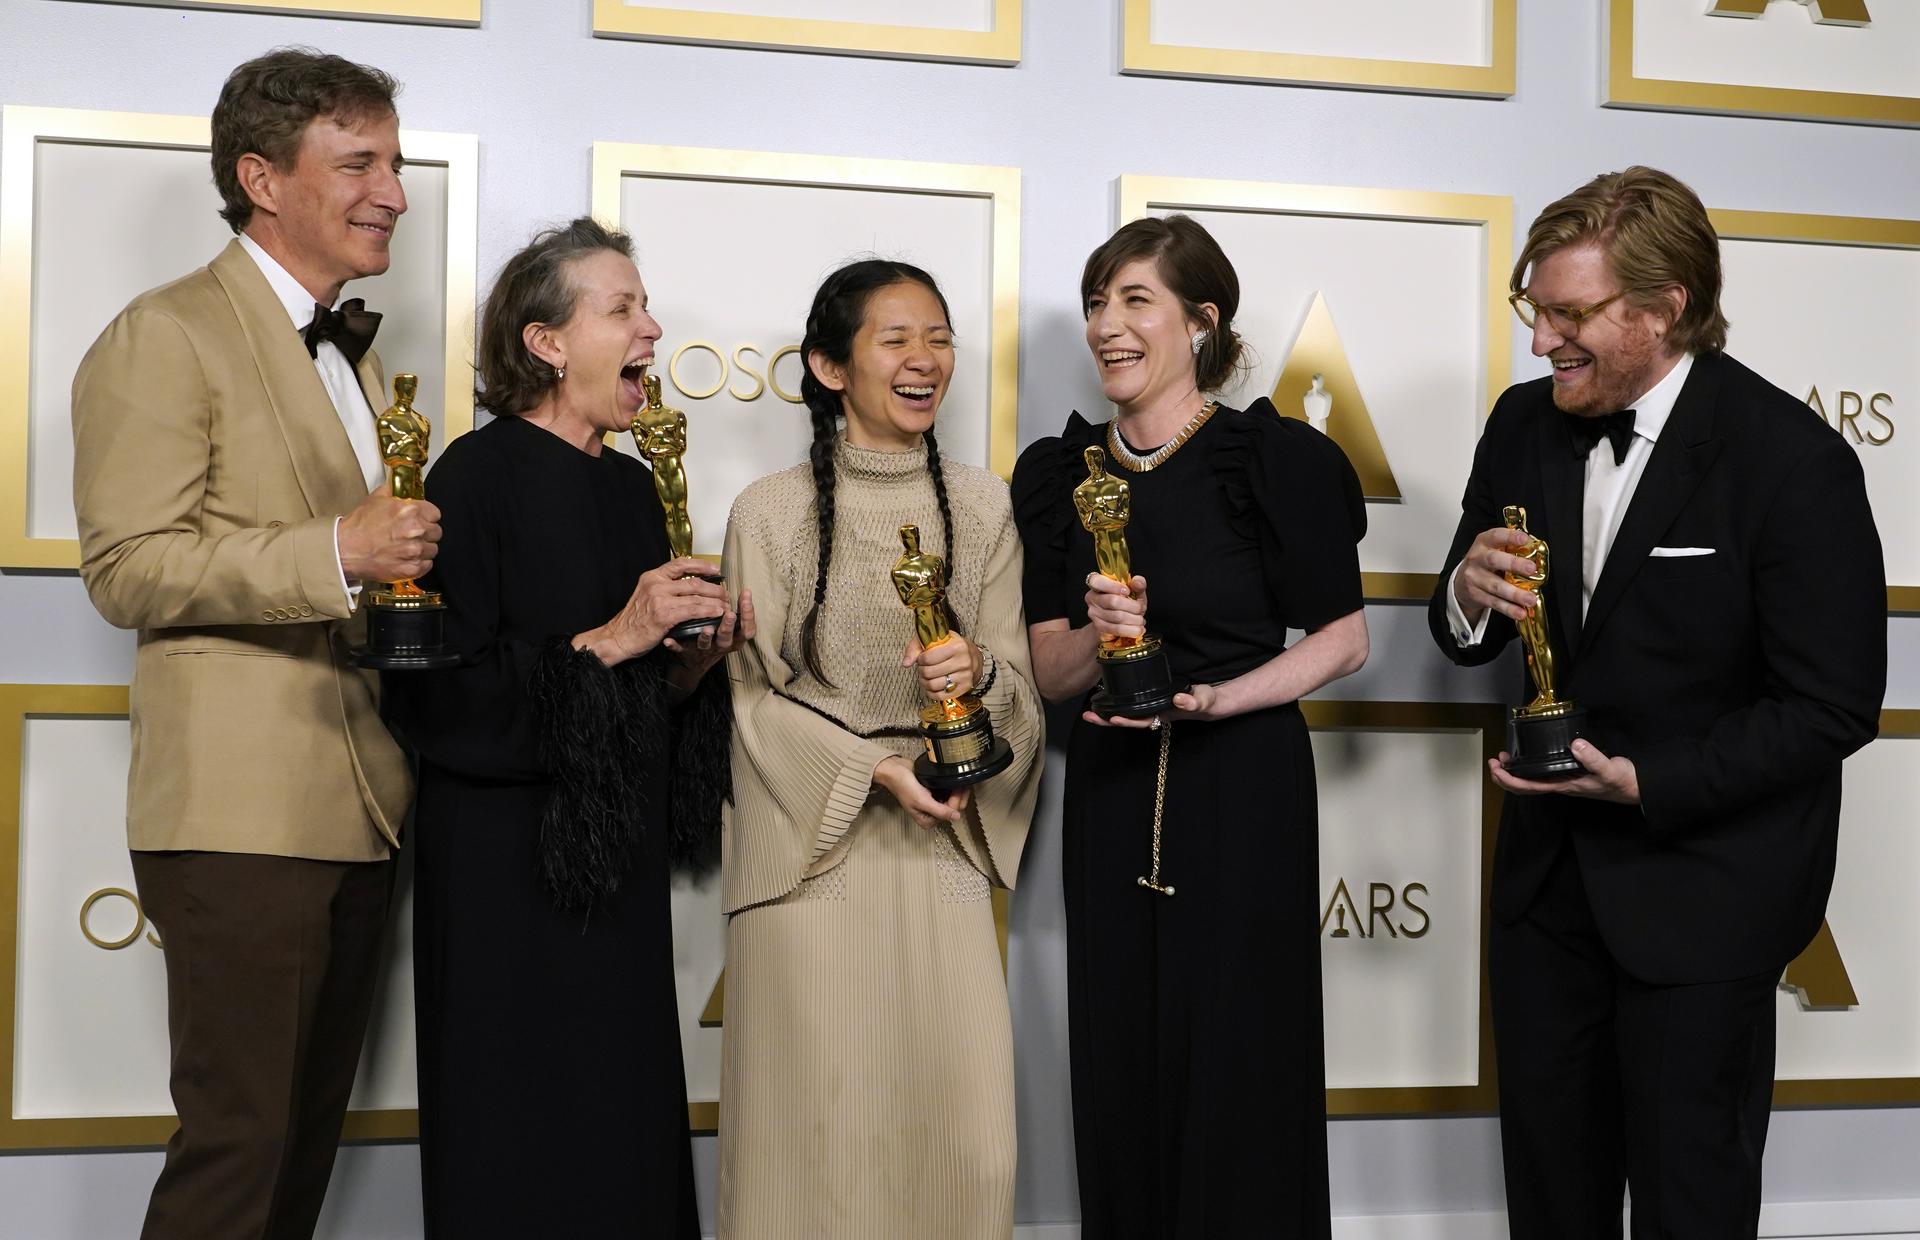 Вечеринка в стиле Оскар для взрослых: сценарий, конкурсы, образы для корпоратива в стиле кинопремии